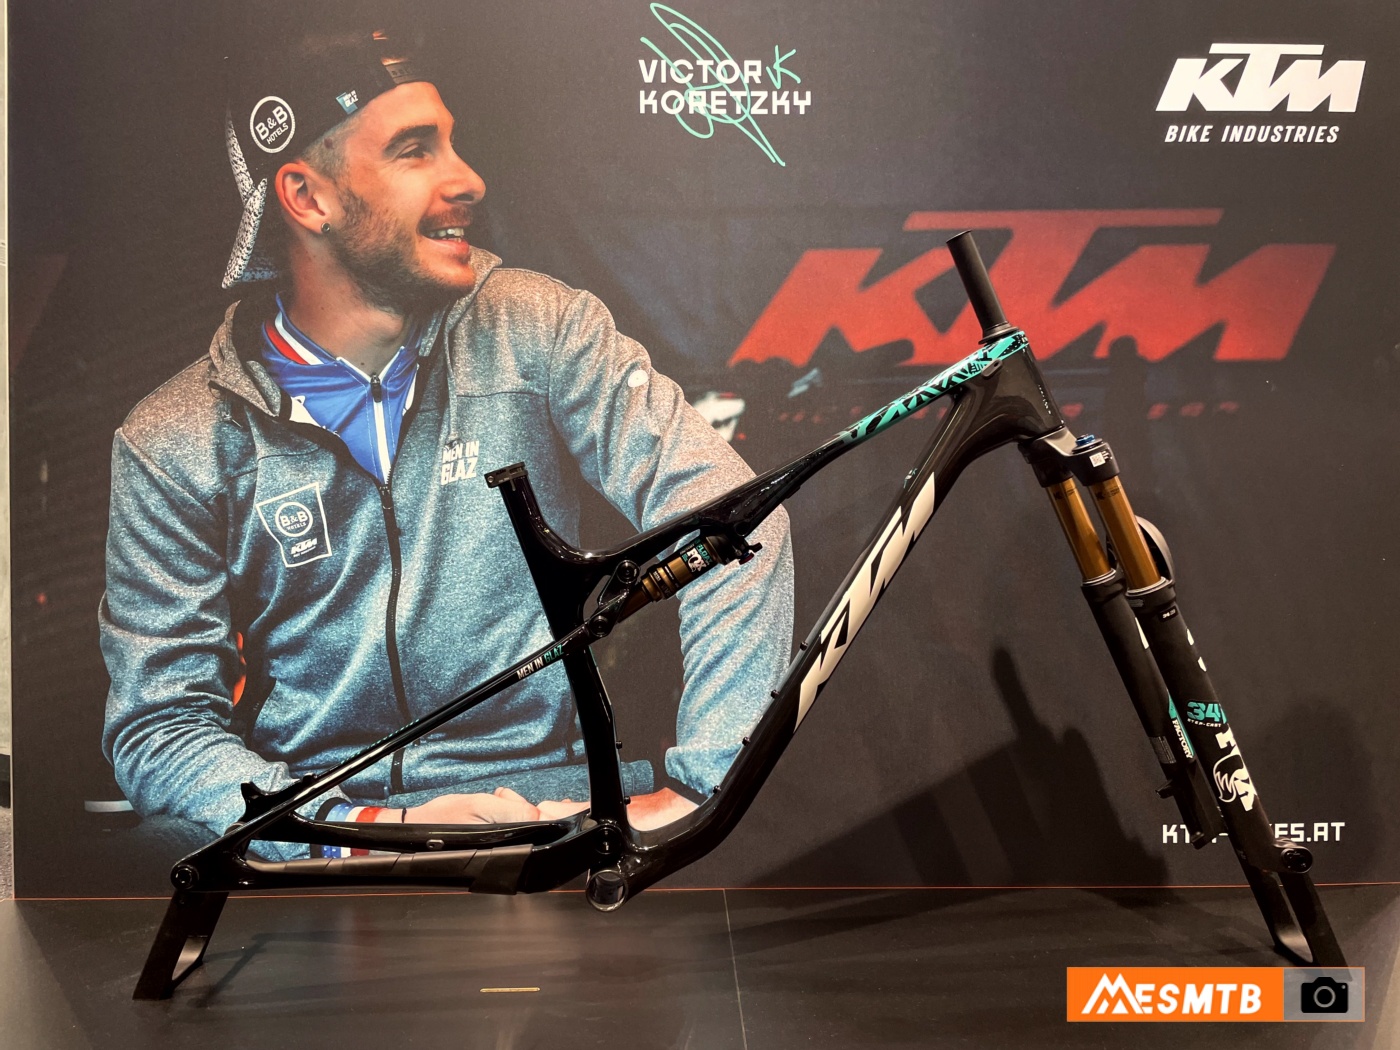 KTM Scarp edición Victor Koretzky